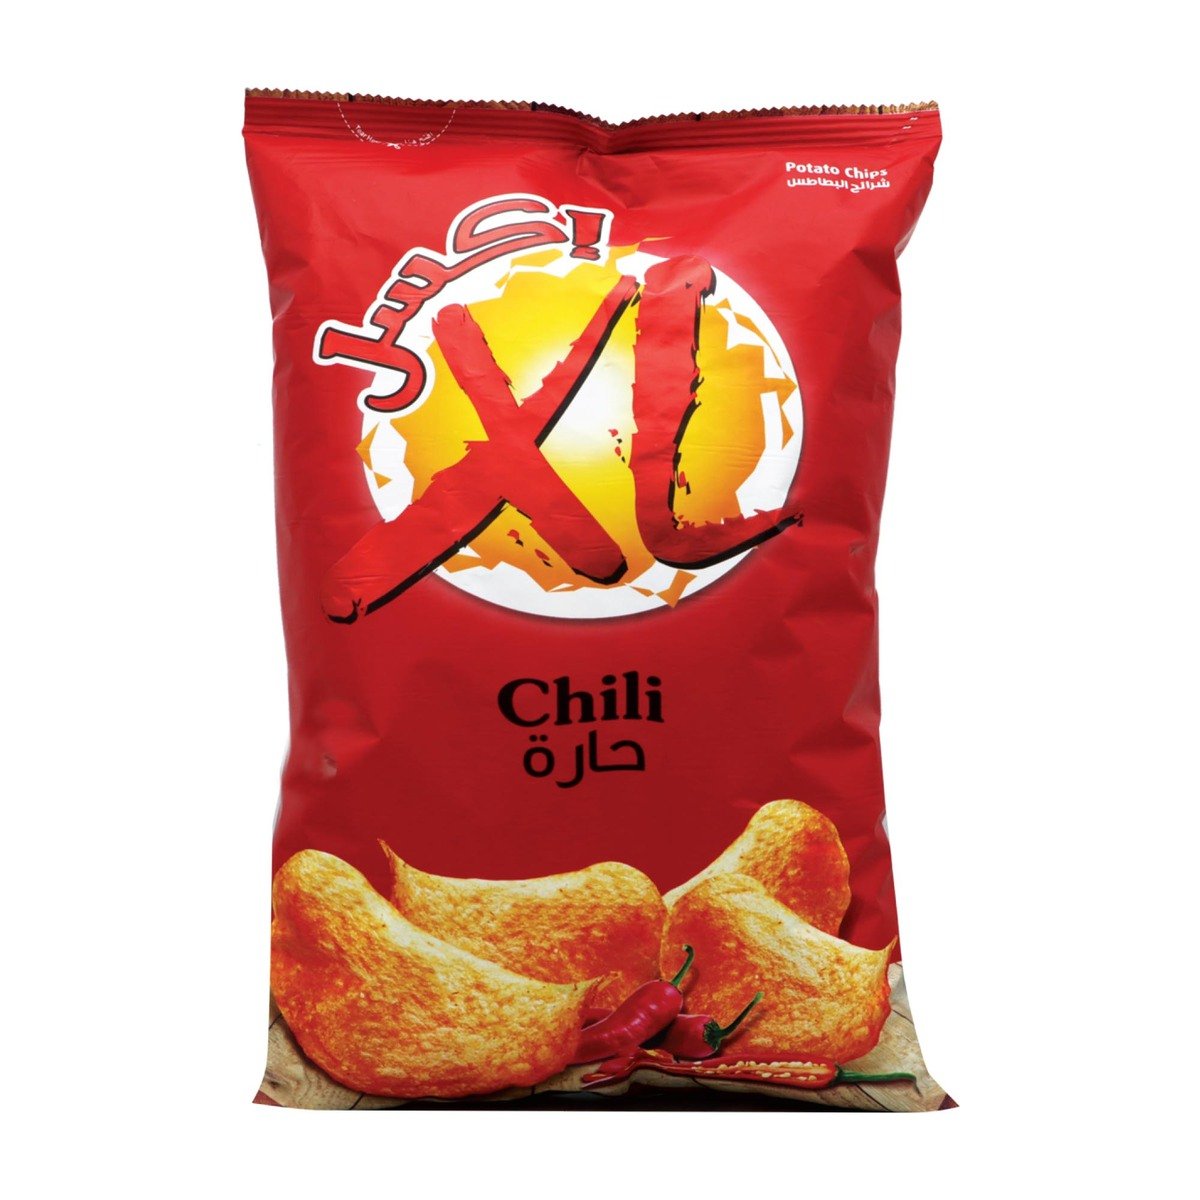 XL Potato Chips Chili 165g